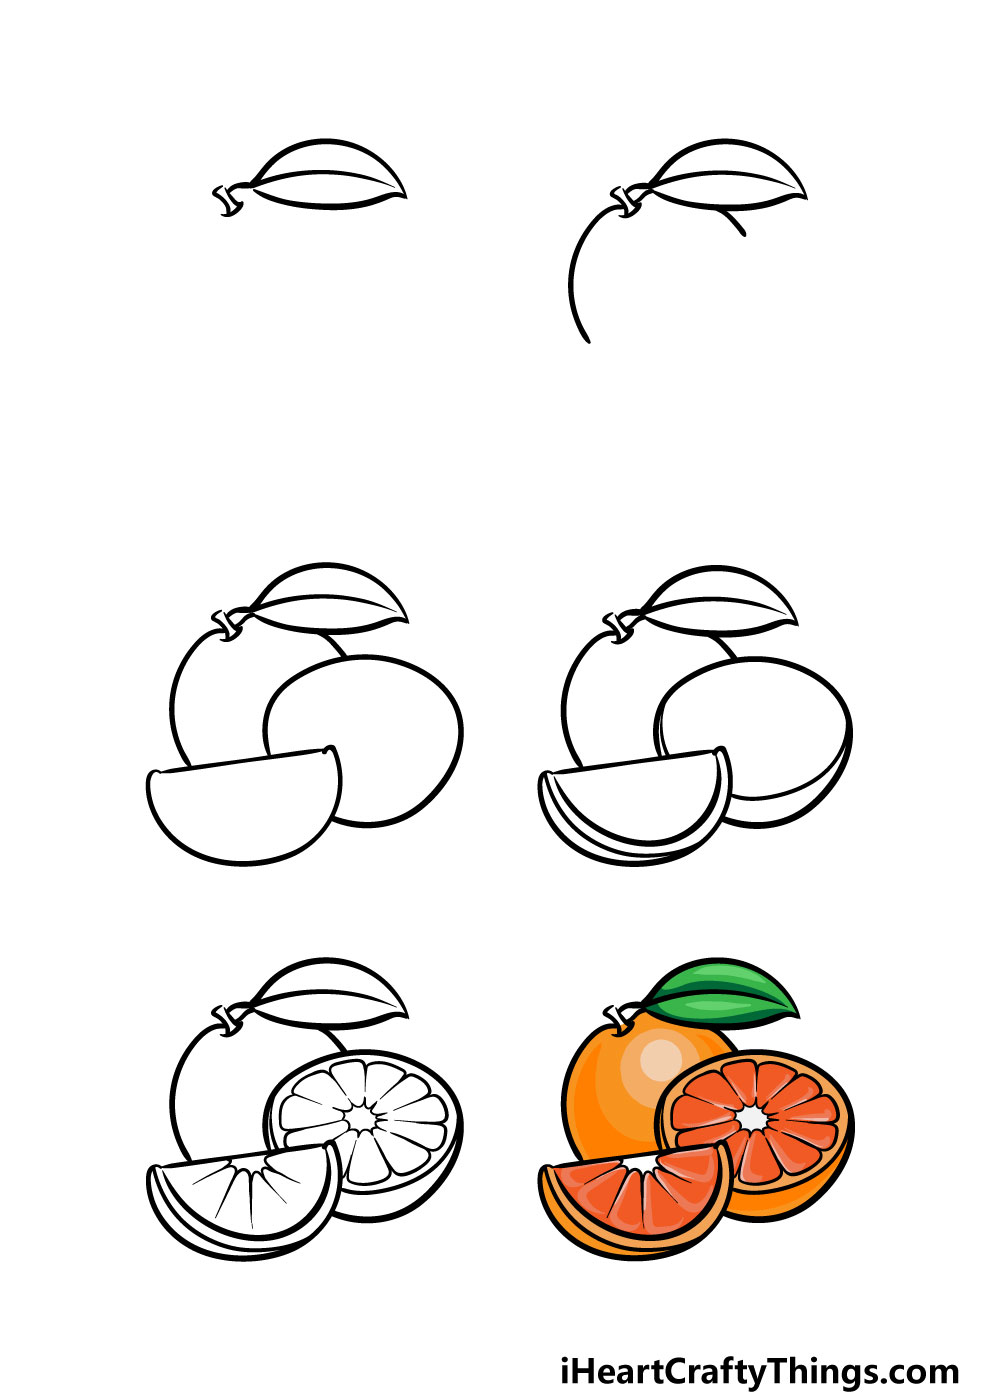 Orange - Hướng dẫn cách vẽ quả cam đơn giản với 6 bước cơ bản